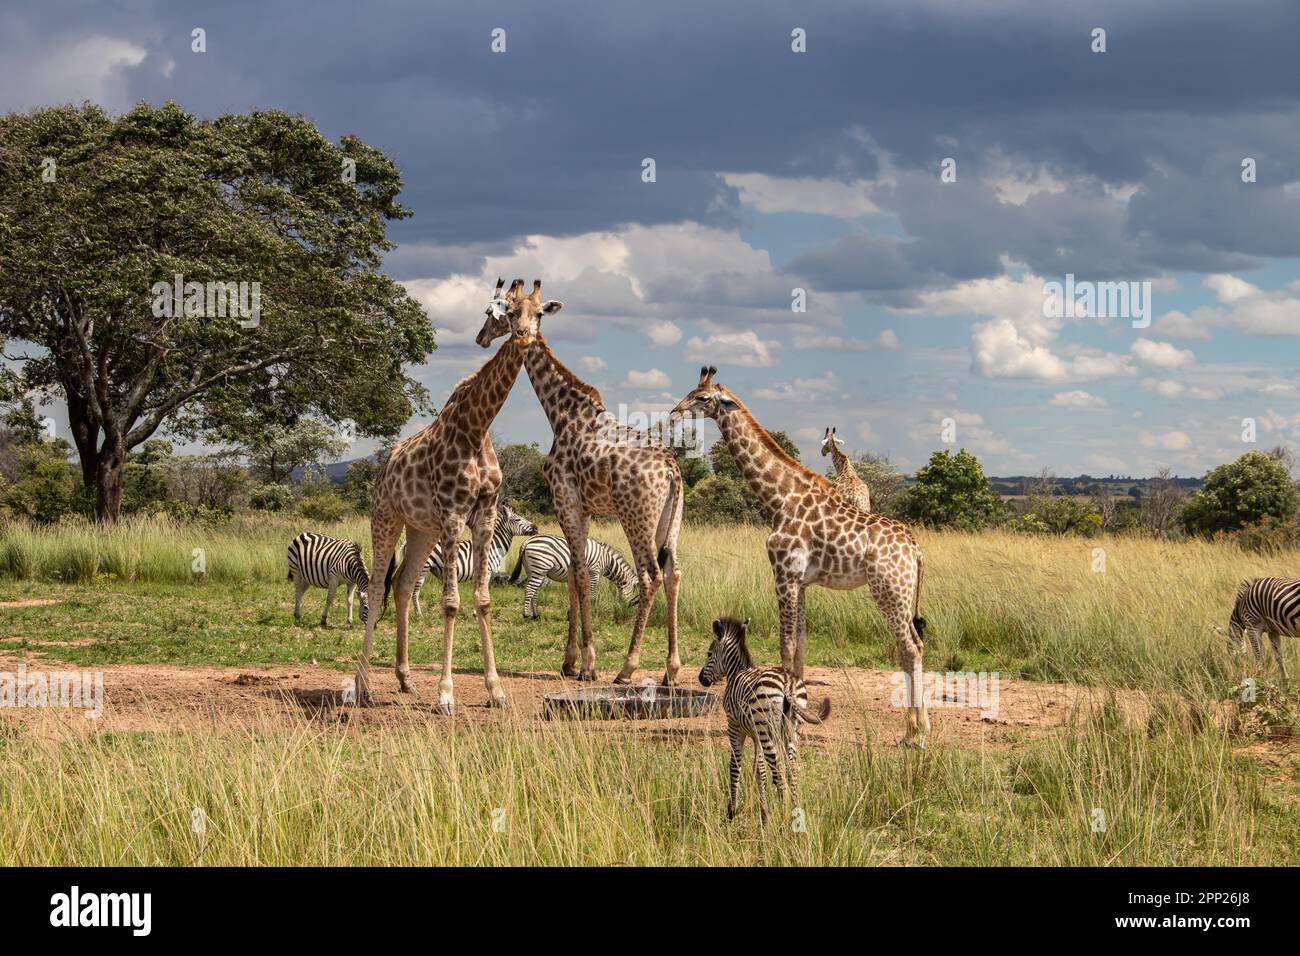 Plusieurs animaux sauvages (zébra et girafe), se rassemblent autour de la source d'eau dans la savane dans le parc national de préservation Imire, au Zimbabwe, safari en Afrique Banque D'Images